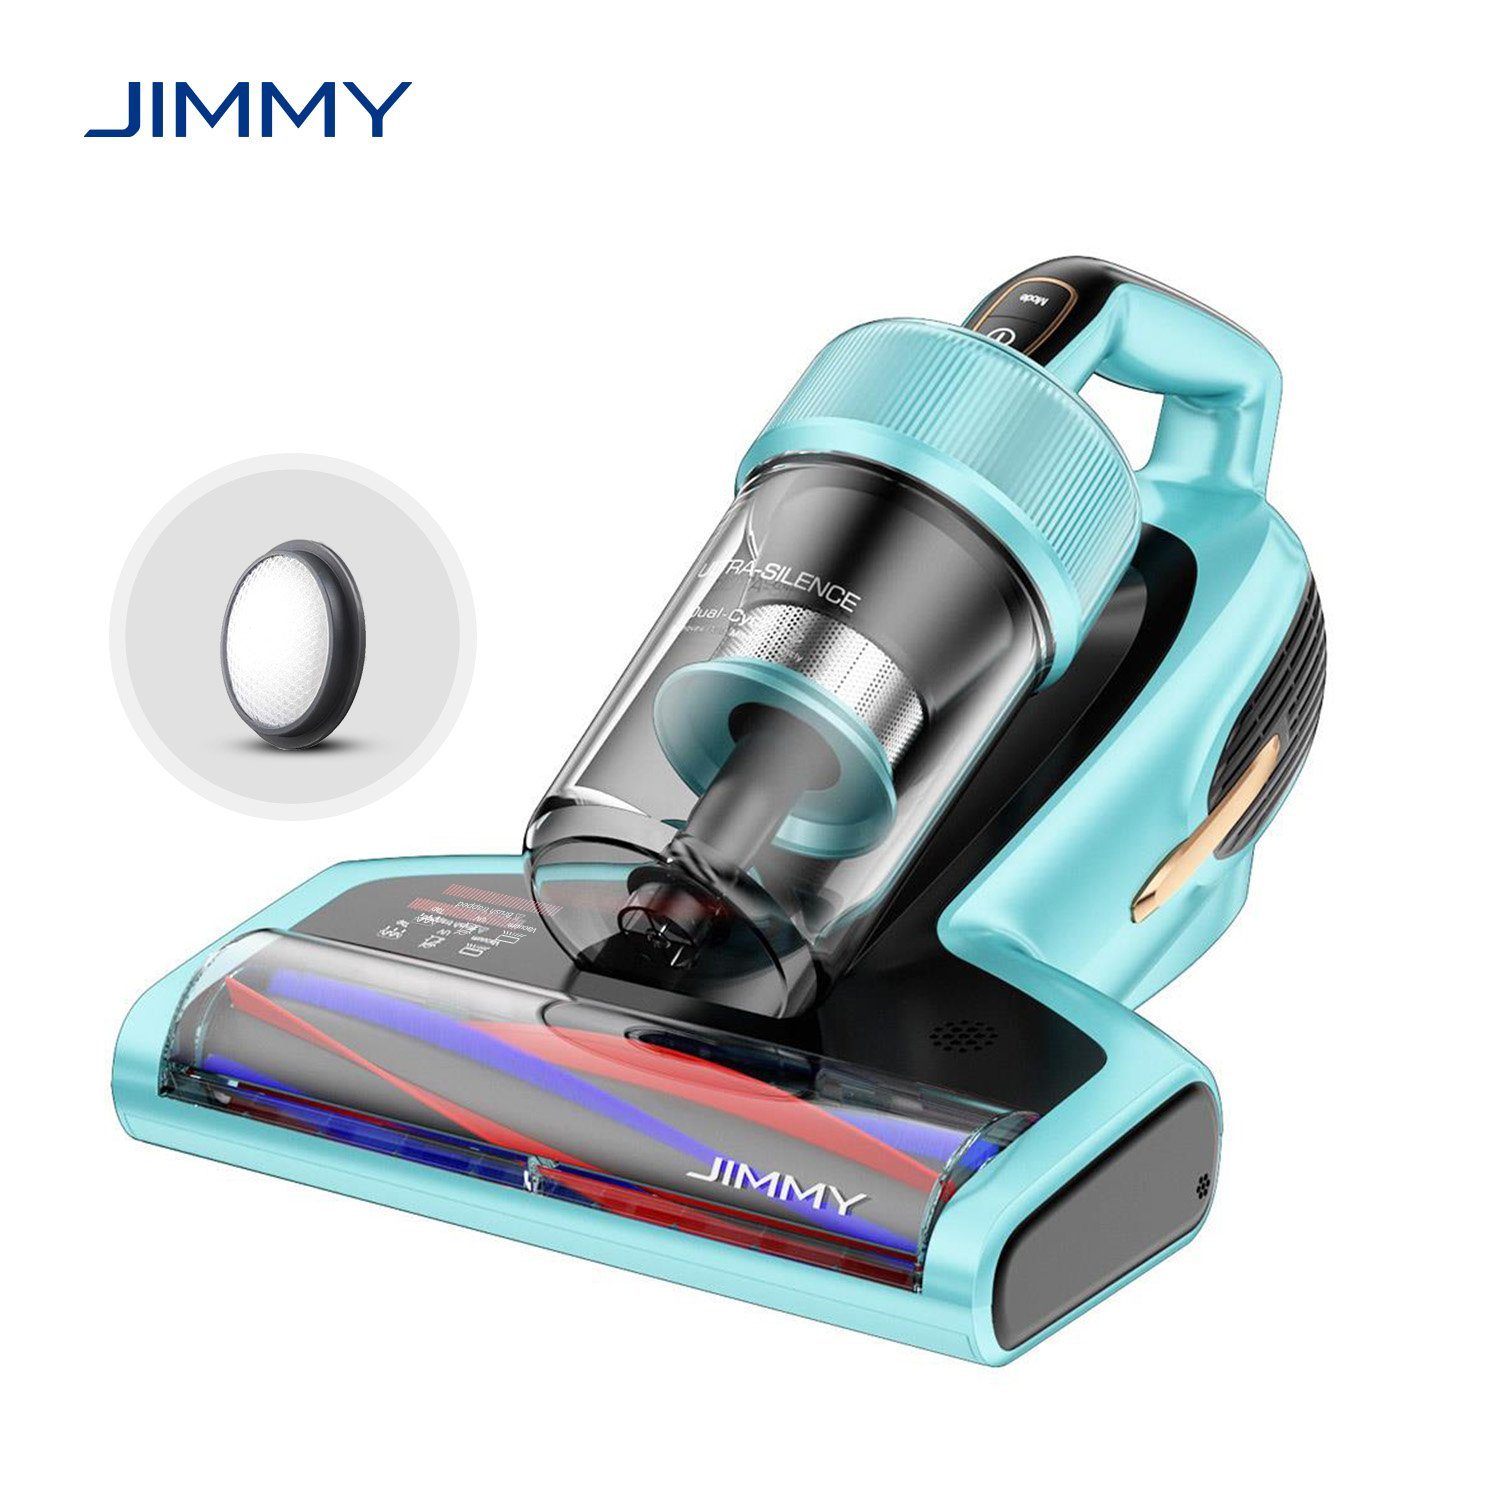 Jimmy Matratzenreinigungsgerät BX7 Pro Milbenstaubsauger Handstaubsauger, 700,00 W, mit Beutel, UV-C Licht, Hausstaubmilbensensor, Ultraschallfunktion Blau